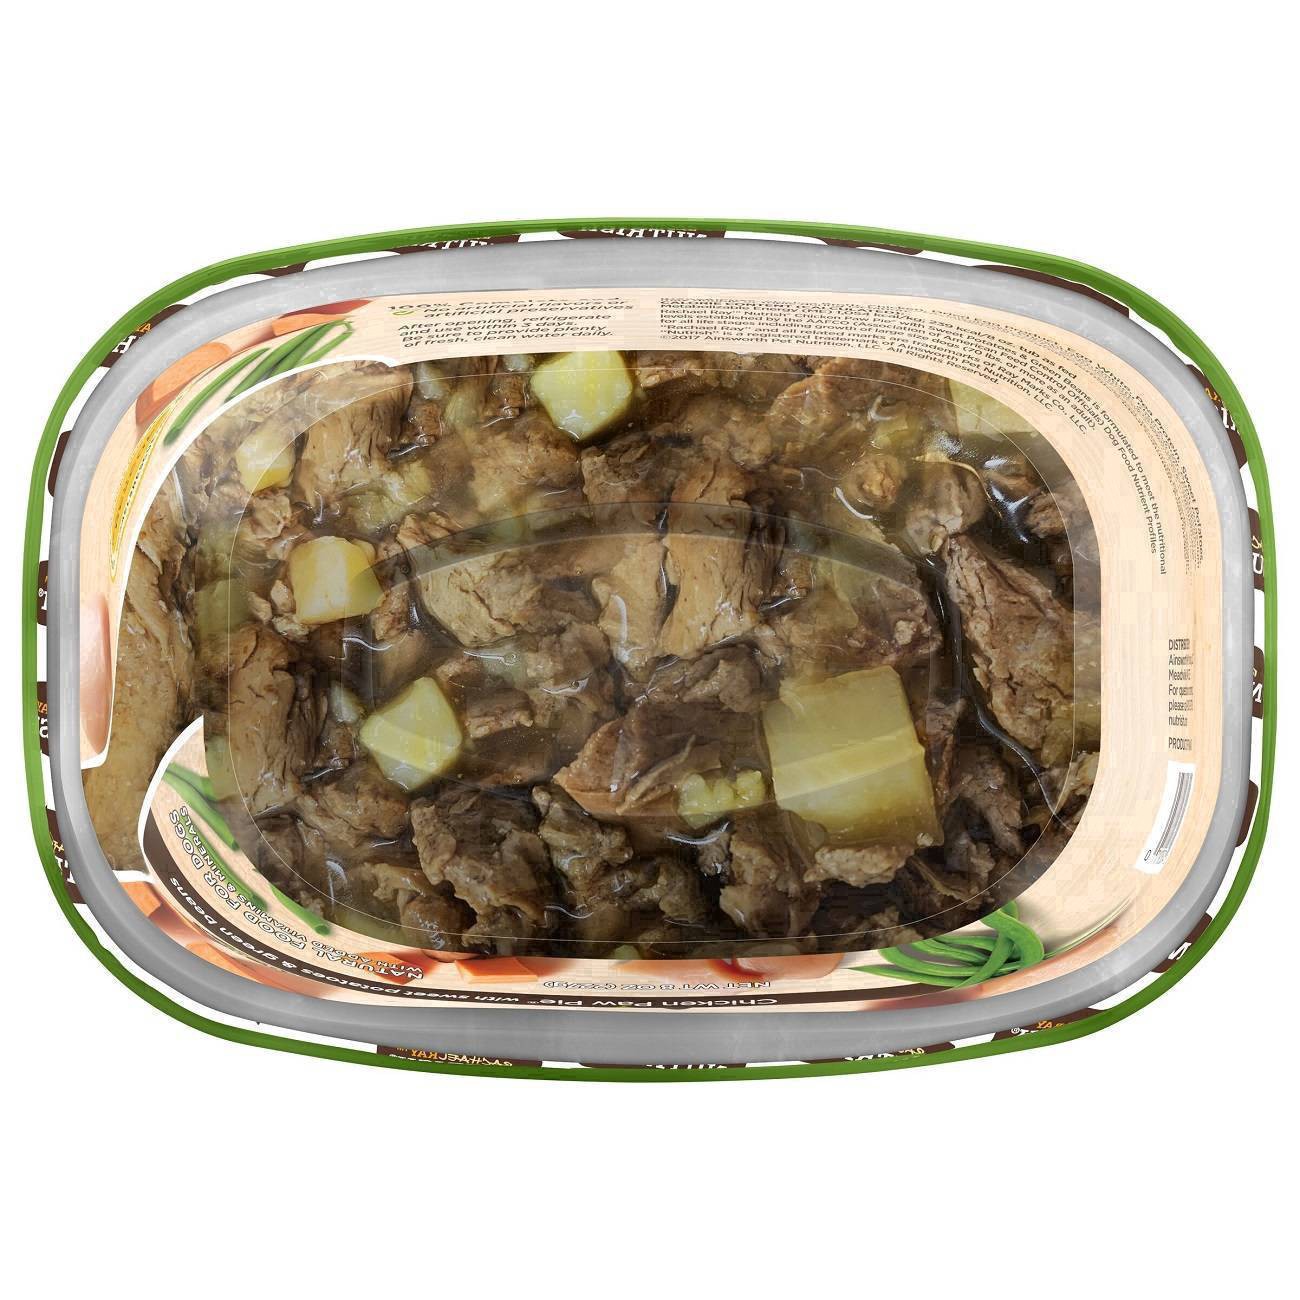 slide 105 of 106, Rachael Ray Nutrish Savory Lamb Stew Wet Dog Food, 8 oz. Tub, 8 oz